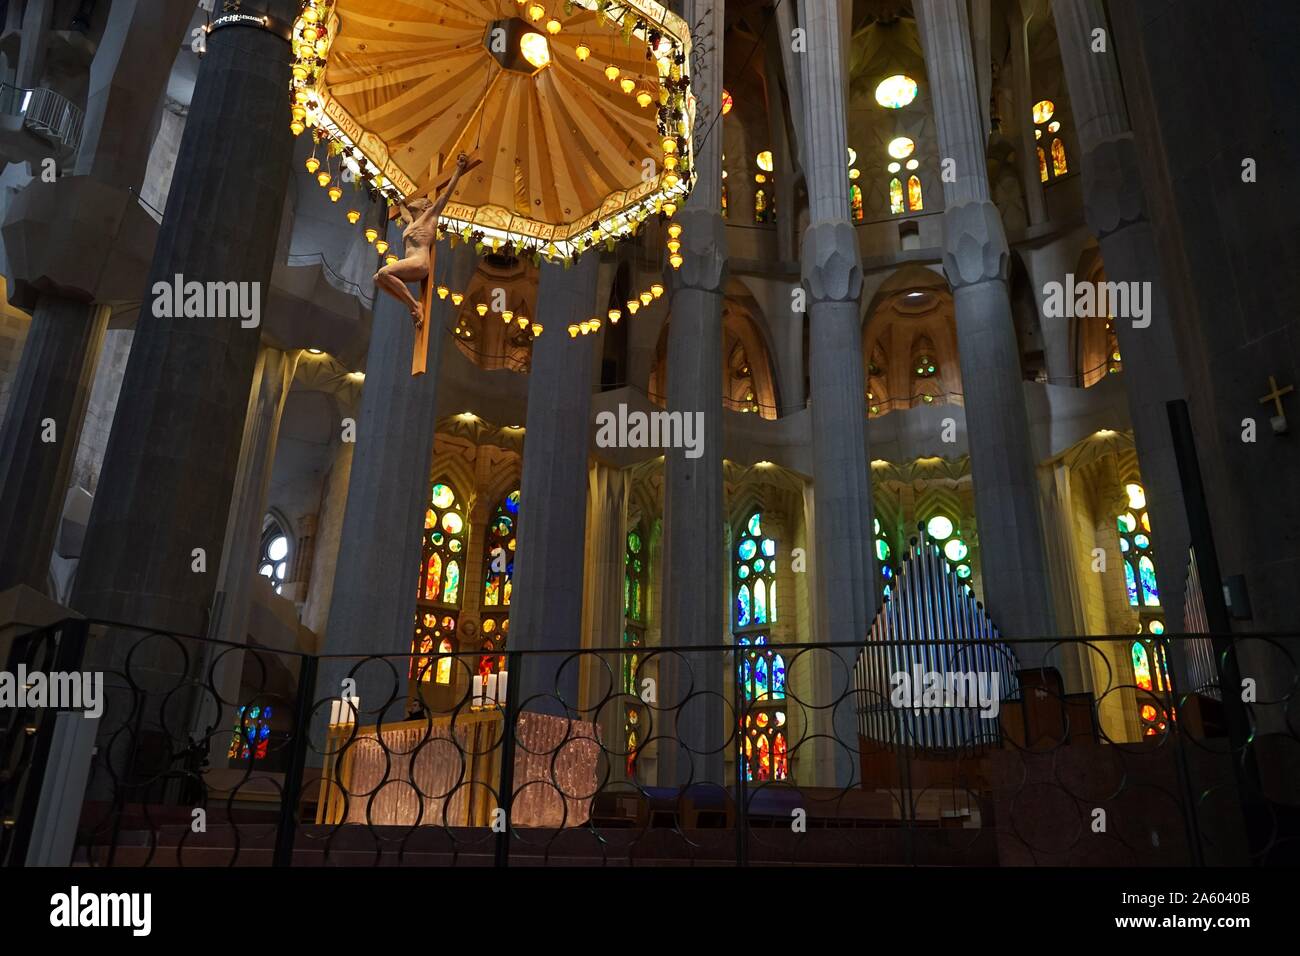 Vue sur le crucifix suspendu et le verre dans l'autel du Temple Expiatori Basílica je de la Sagrada Família, une église catholique romaine de Barcelone, conçu par l'architecte espagnol Antoni Gaudí (1852-1926). En date du 21e siècle Banque D'Images